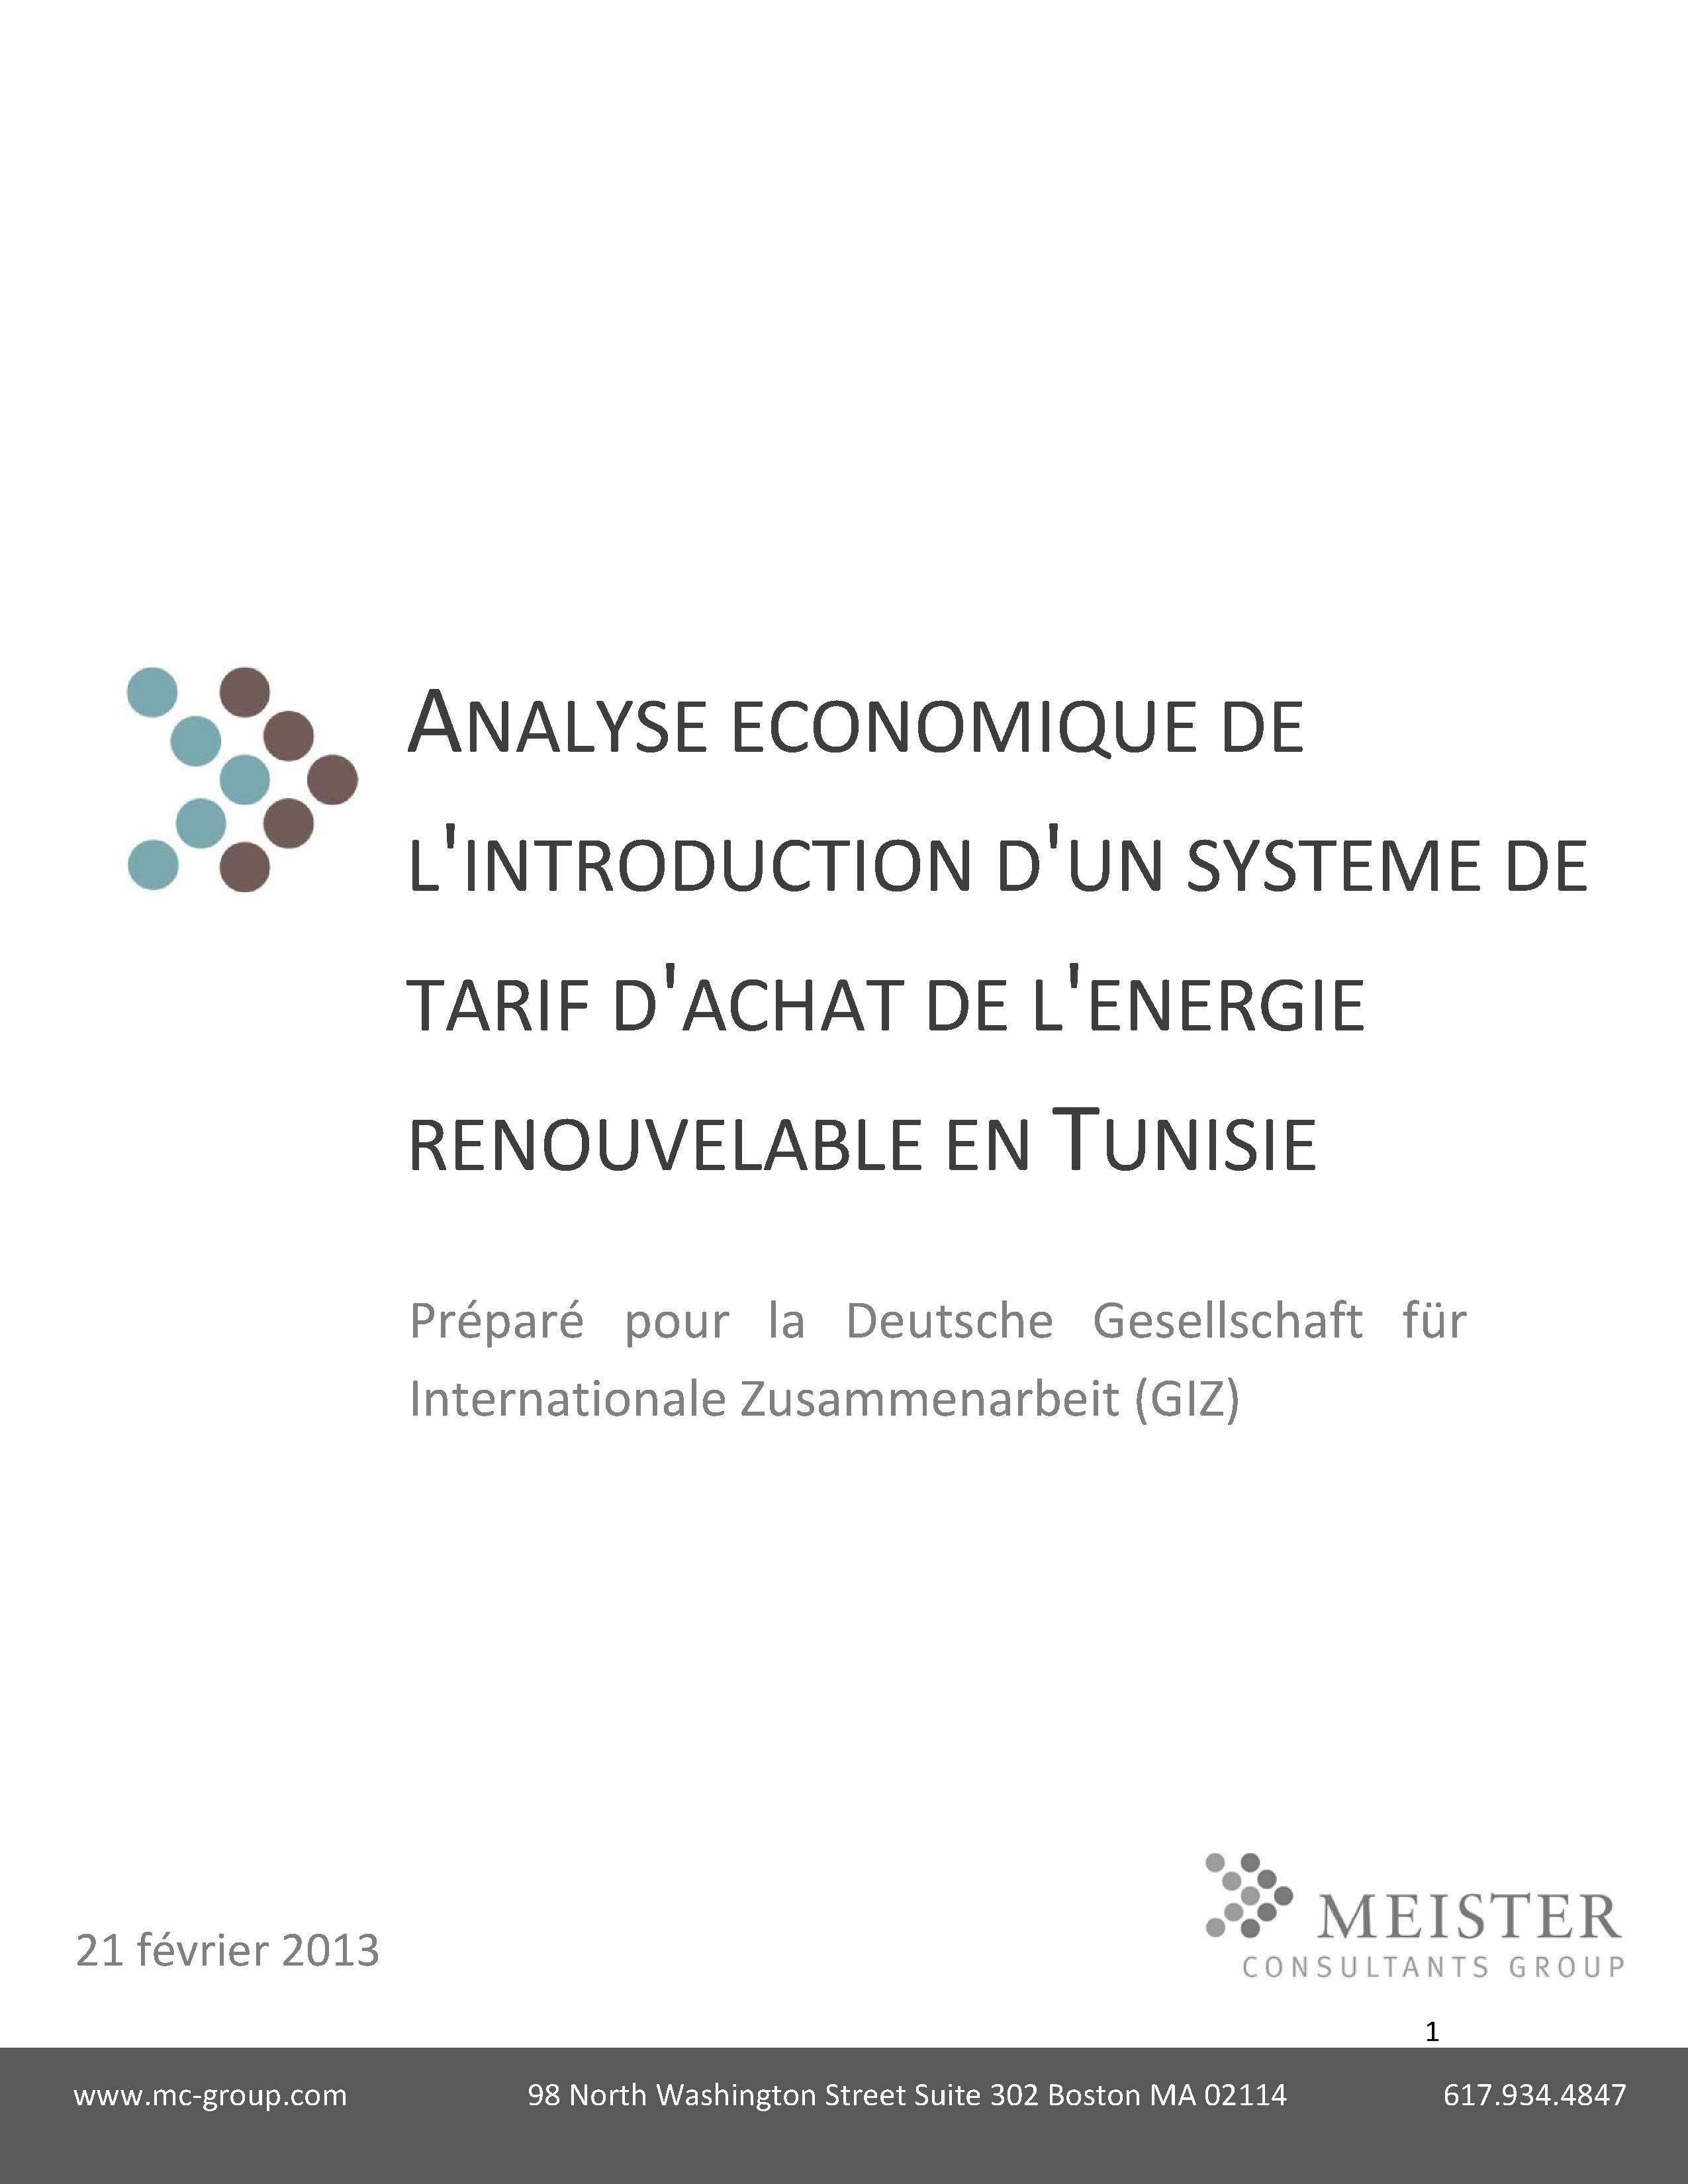 Analyse économique de l'introduction d'un système de tarif de l'achat de l'energie renouvelable en Tunisie», Meister Consultants Group/GIZ (2013)